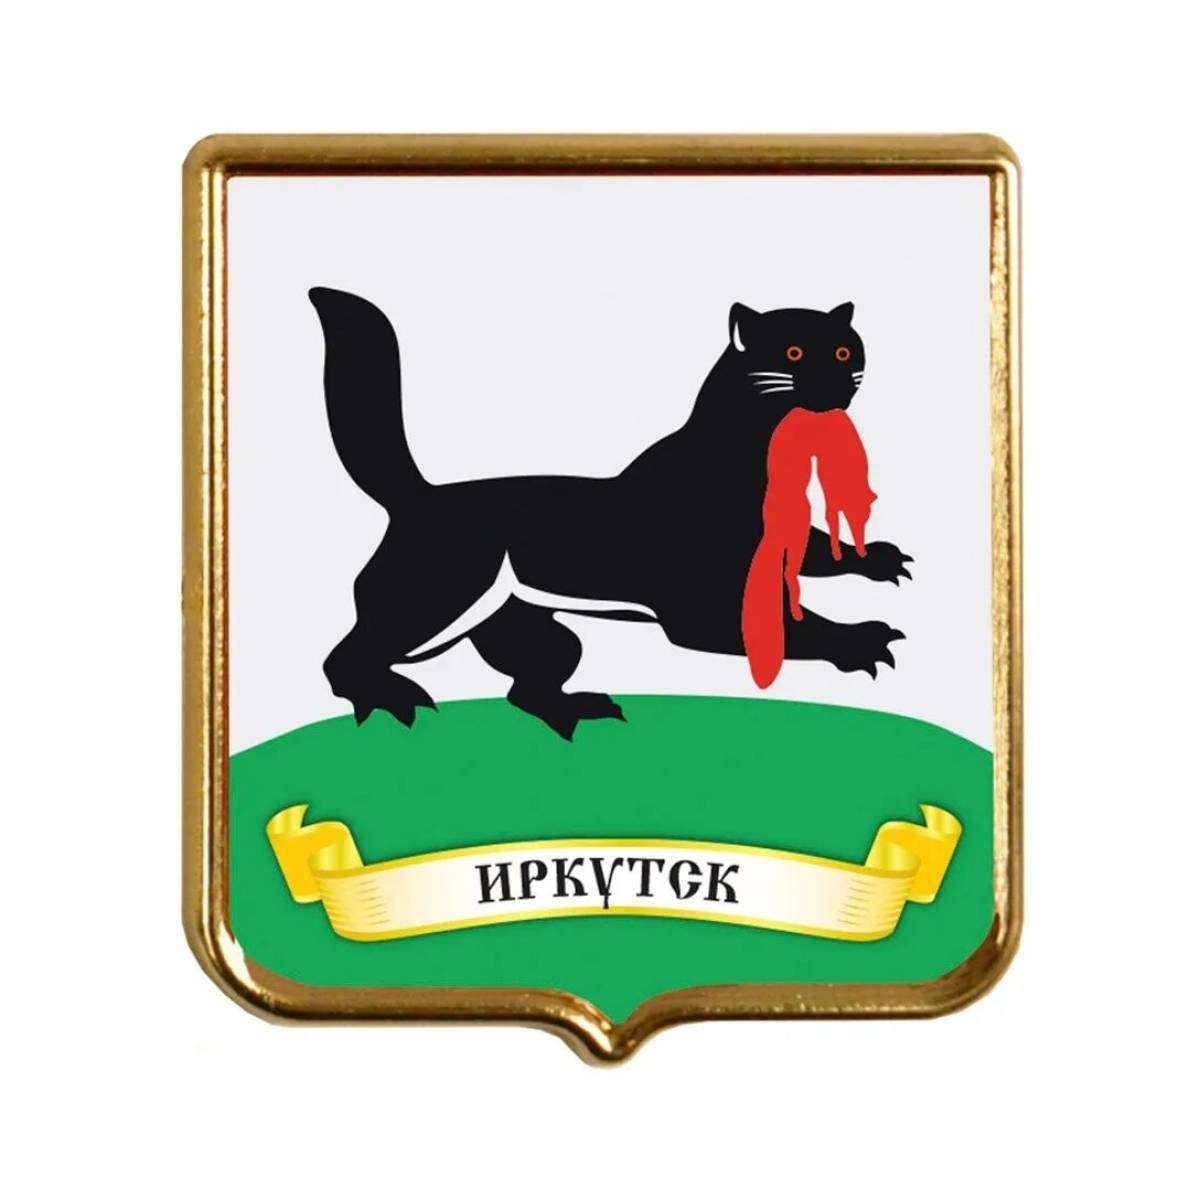 イルクーツク地方の紋章 オンラインパズル